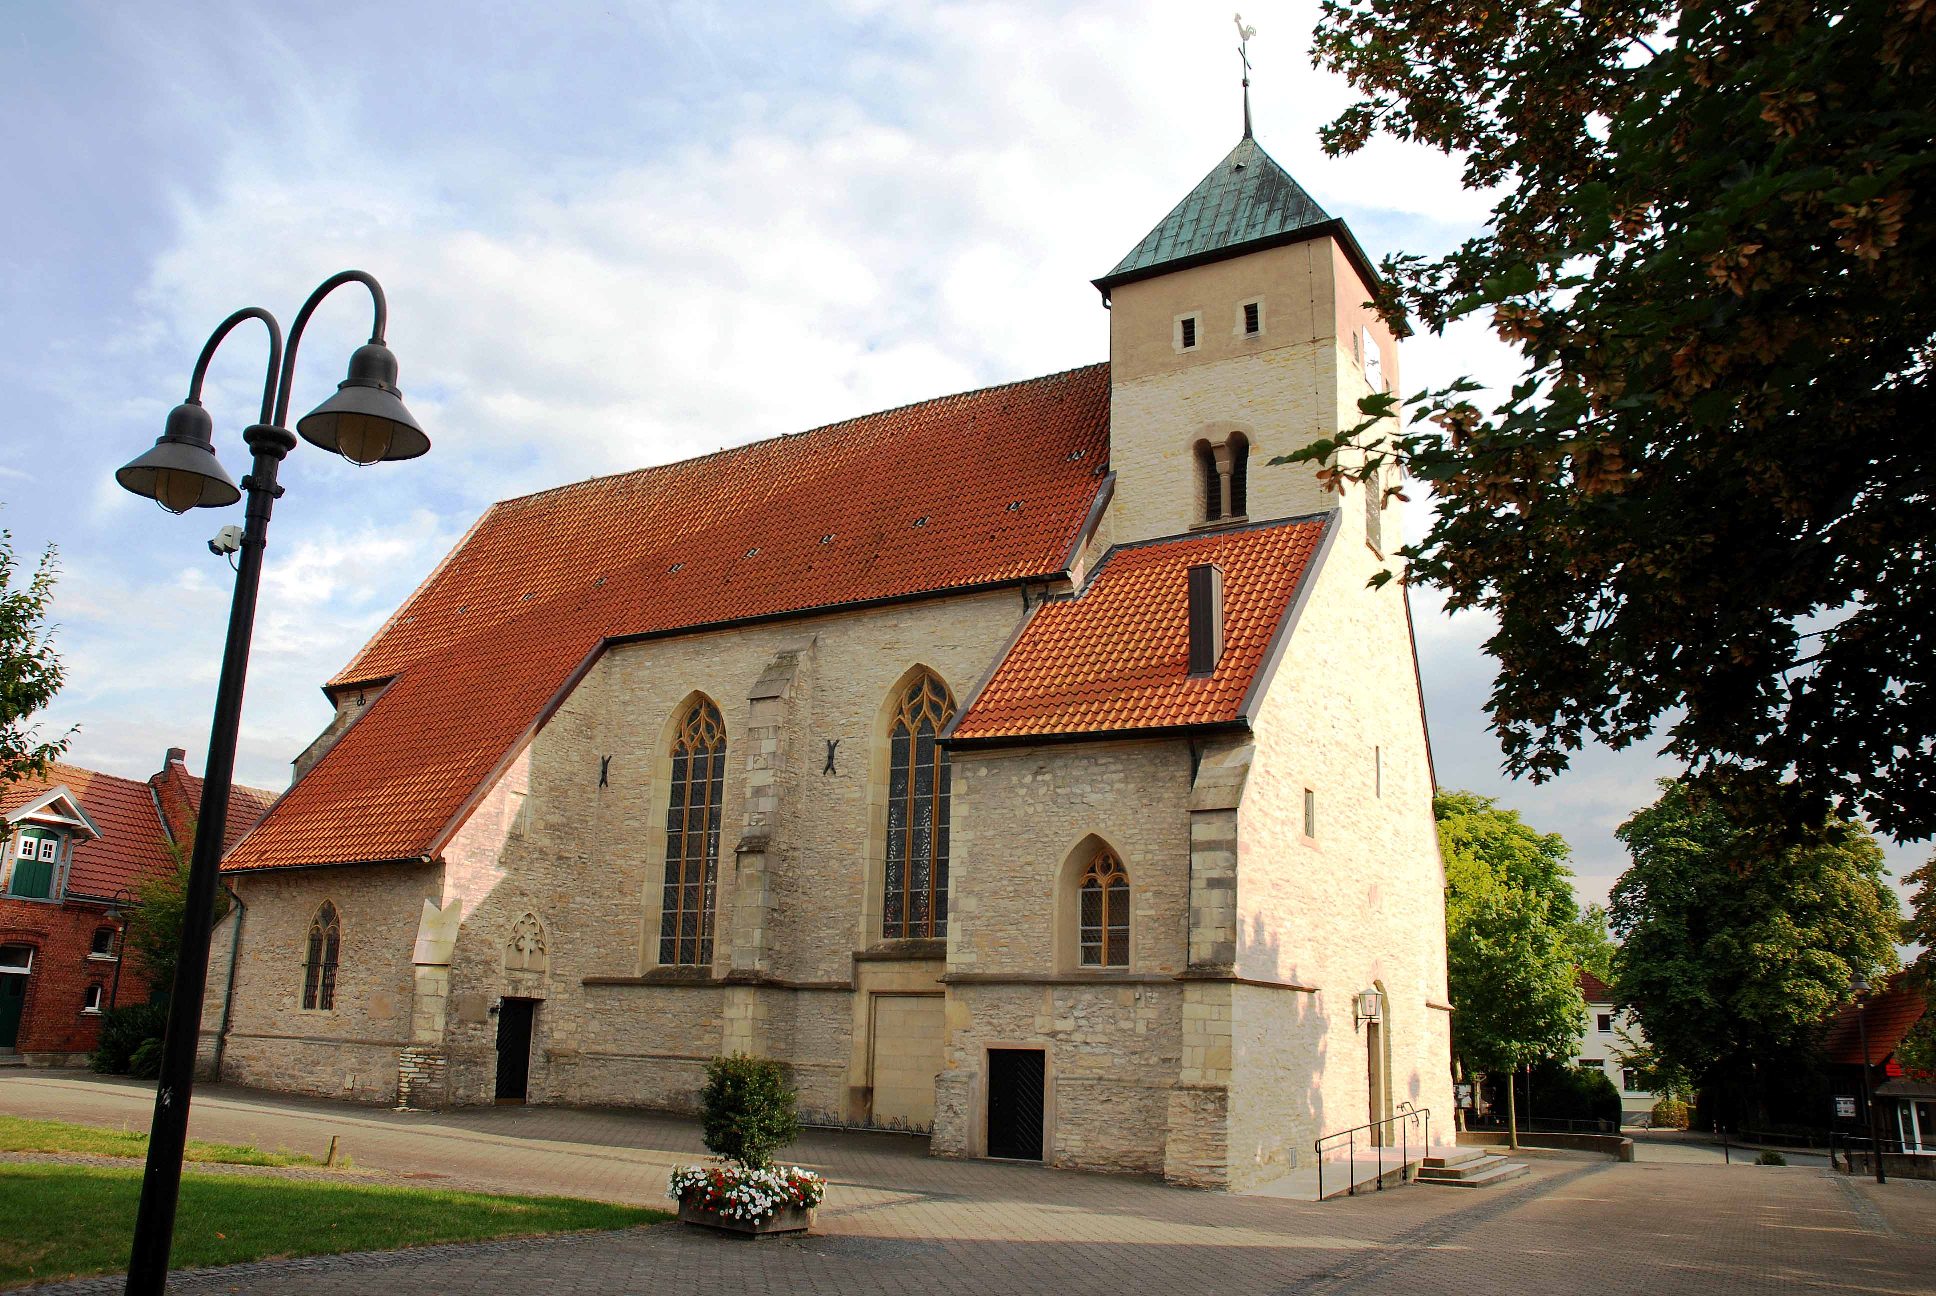 St. Agatha Kirche, St.-Agatha-Platz in Alverskirchen